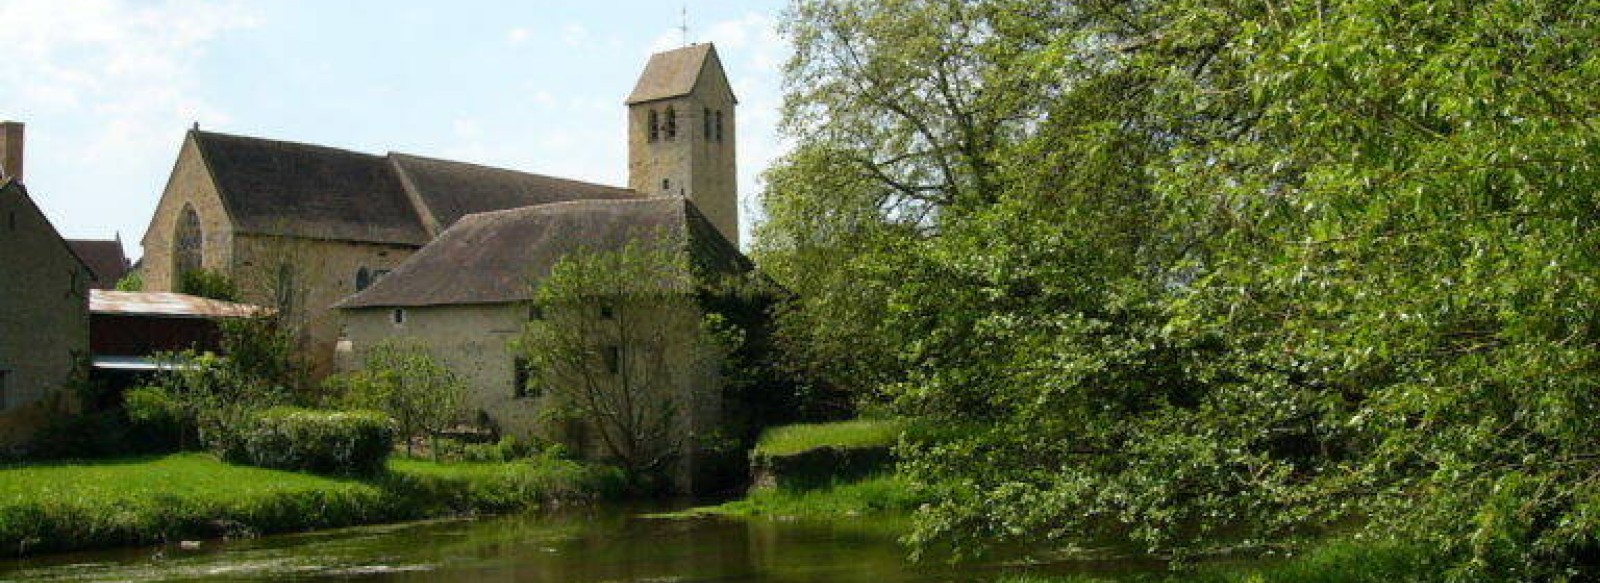 Eglise Saint Hilaire d'Asnieres-sur-Vegre